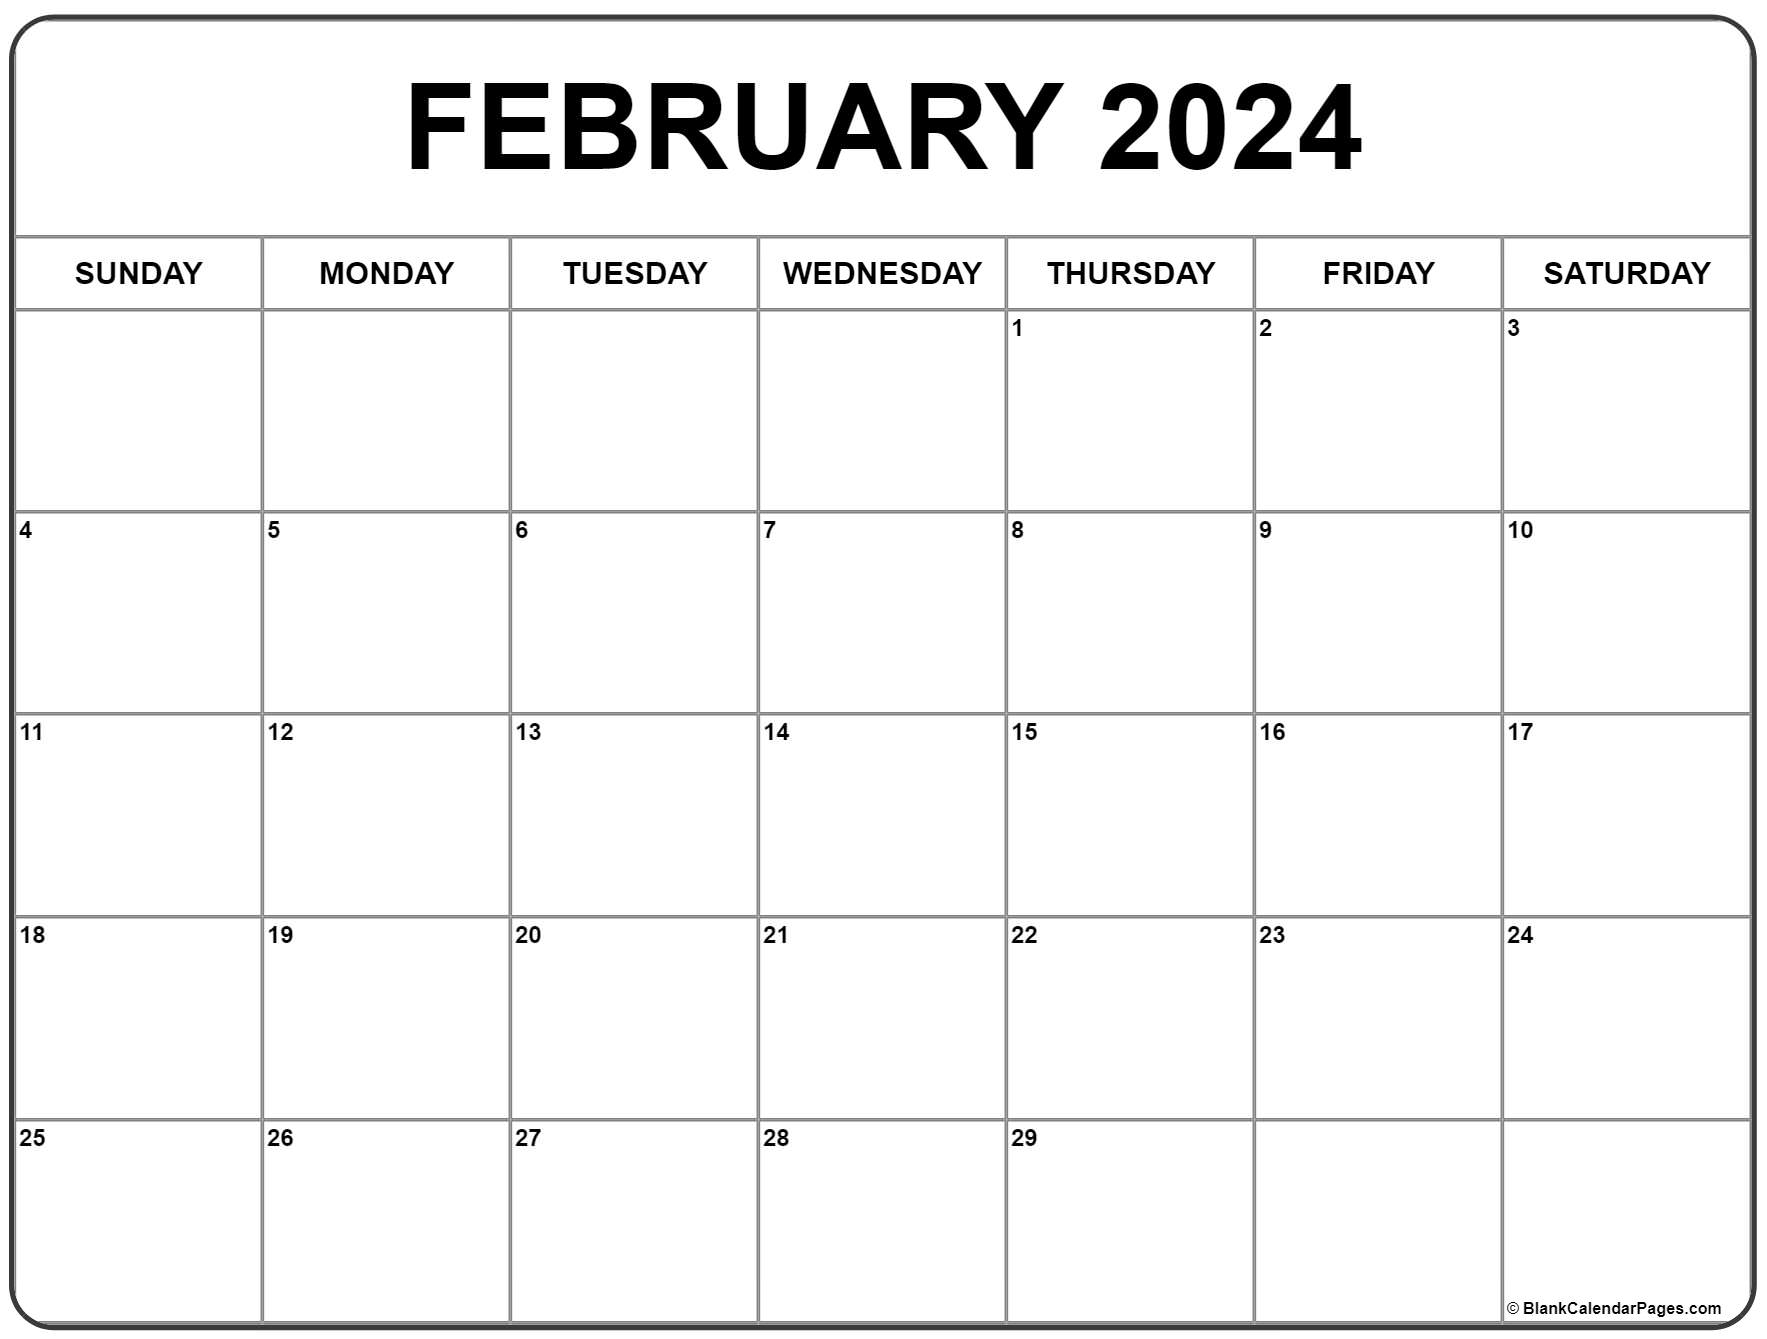 February 2024 Calendar | Free Printable Calendar for Free Printable Monthly Calendar February 2024